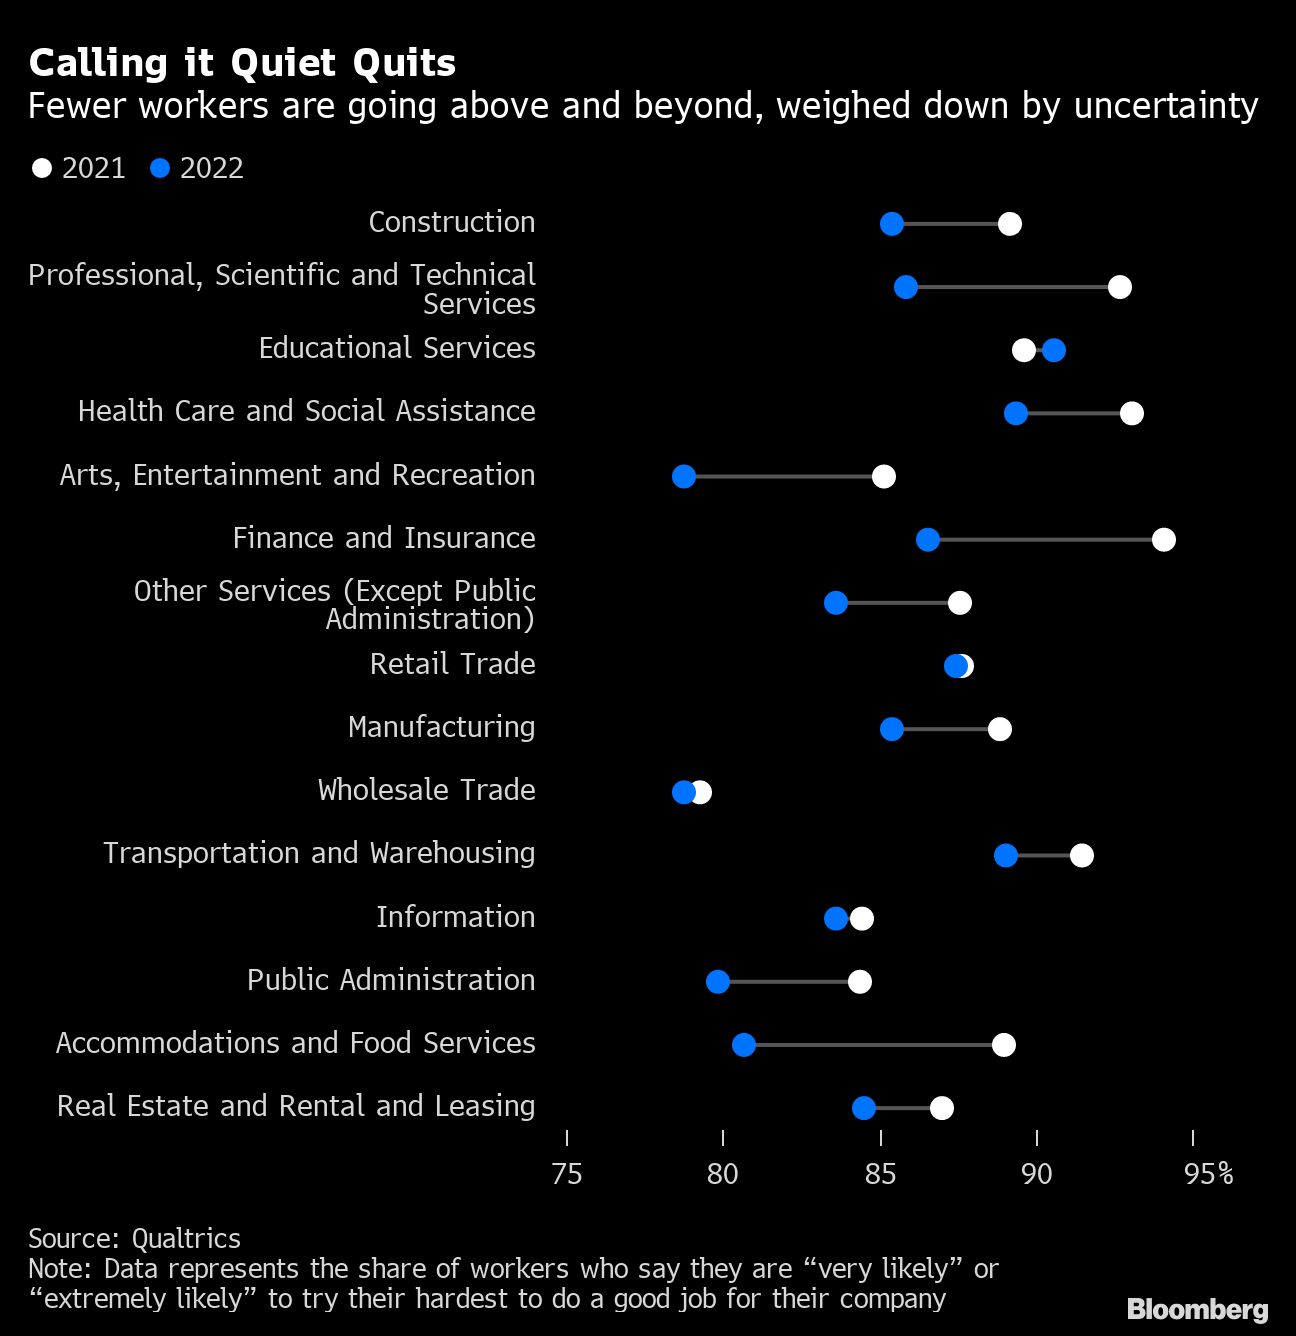 Quiet quitting